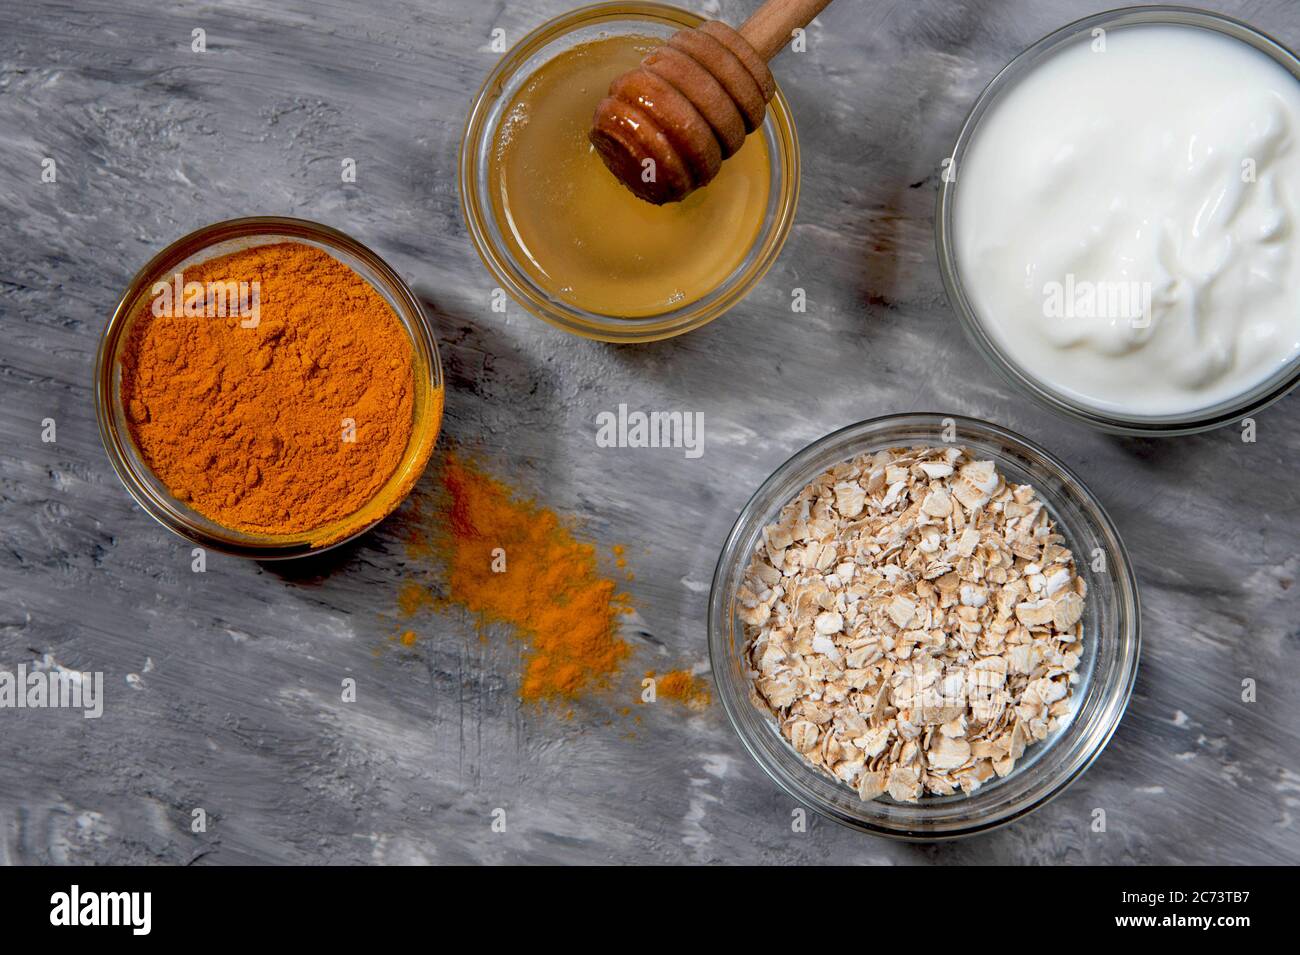 Masque naturel avec poudre de curcuma, miel, flocons d'avoine et yaourt.  Cosmétiques naturels Photo Stock - Alamy